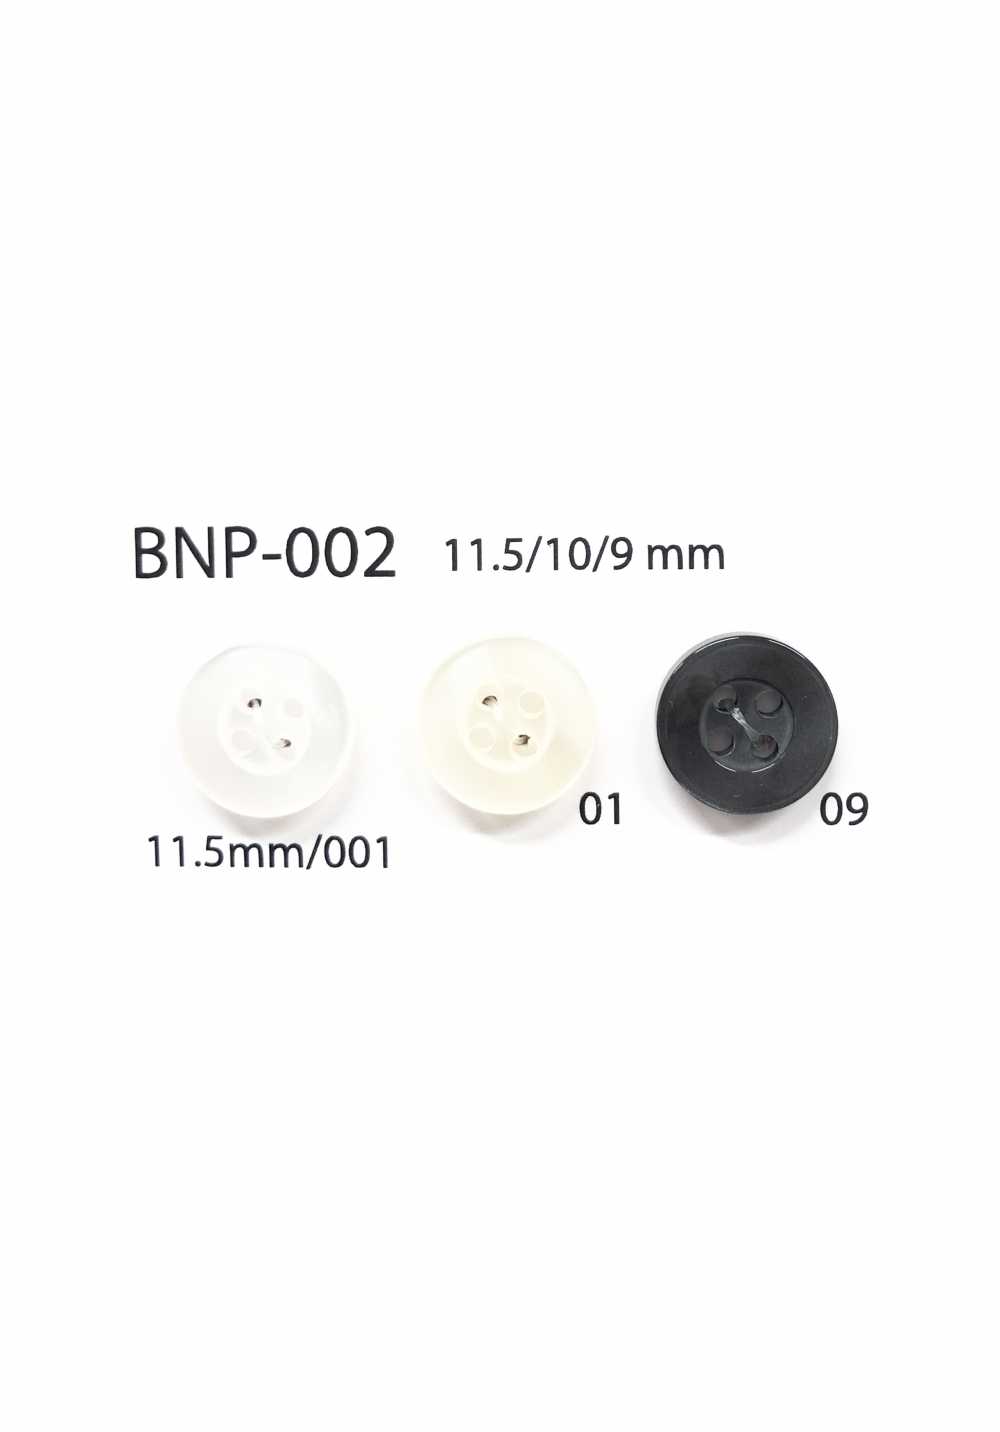 BNP-002 Botão Biopoliester 4 Furos IRIS